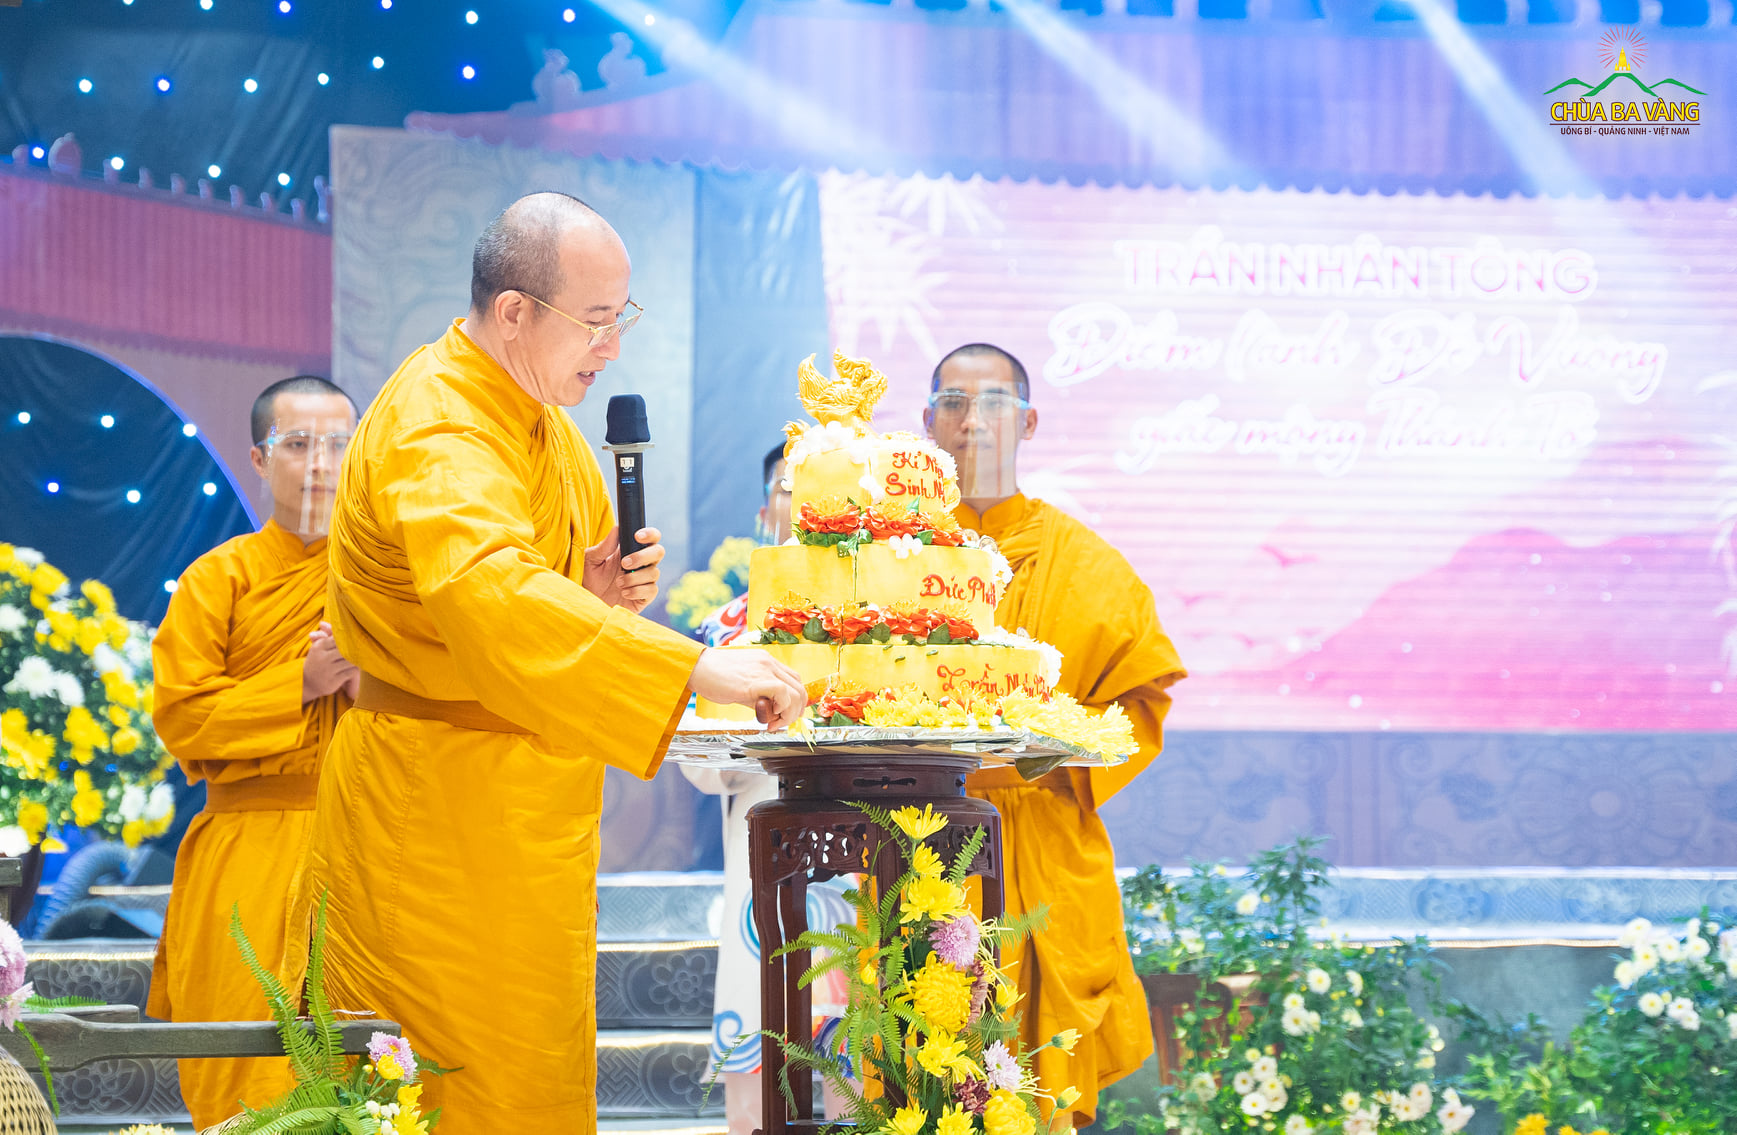 Sư Phụ Thích Trúc Thái Minh cắt bánh kính mừng ngày sinh của Đức vua - Phật hoàng Trần Nhân Tông